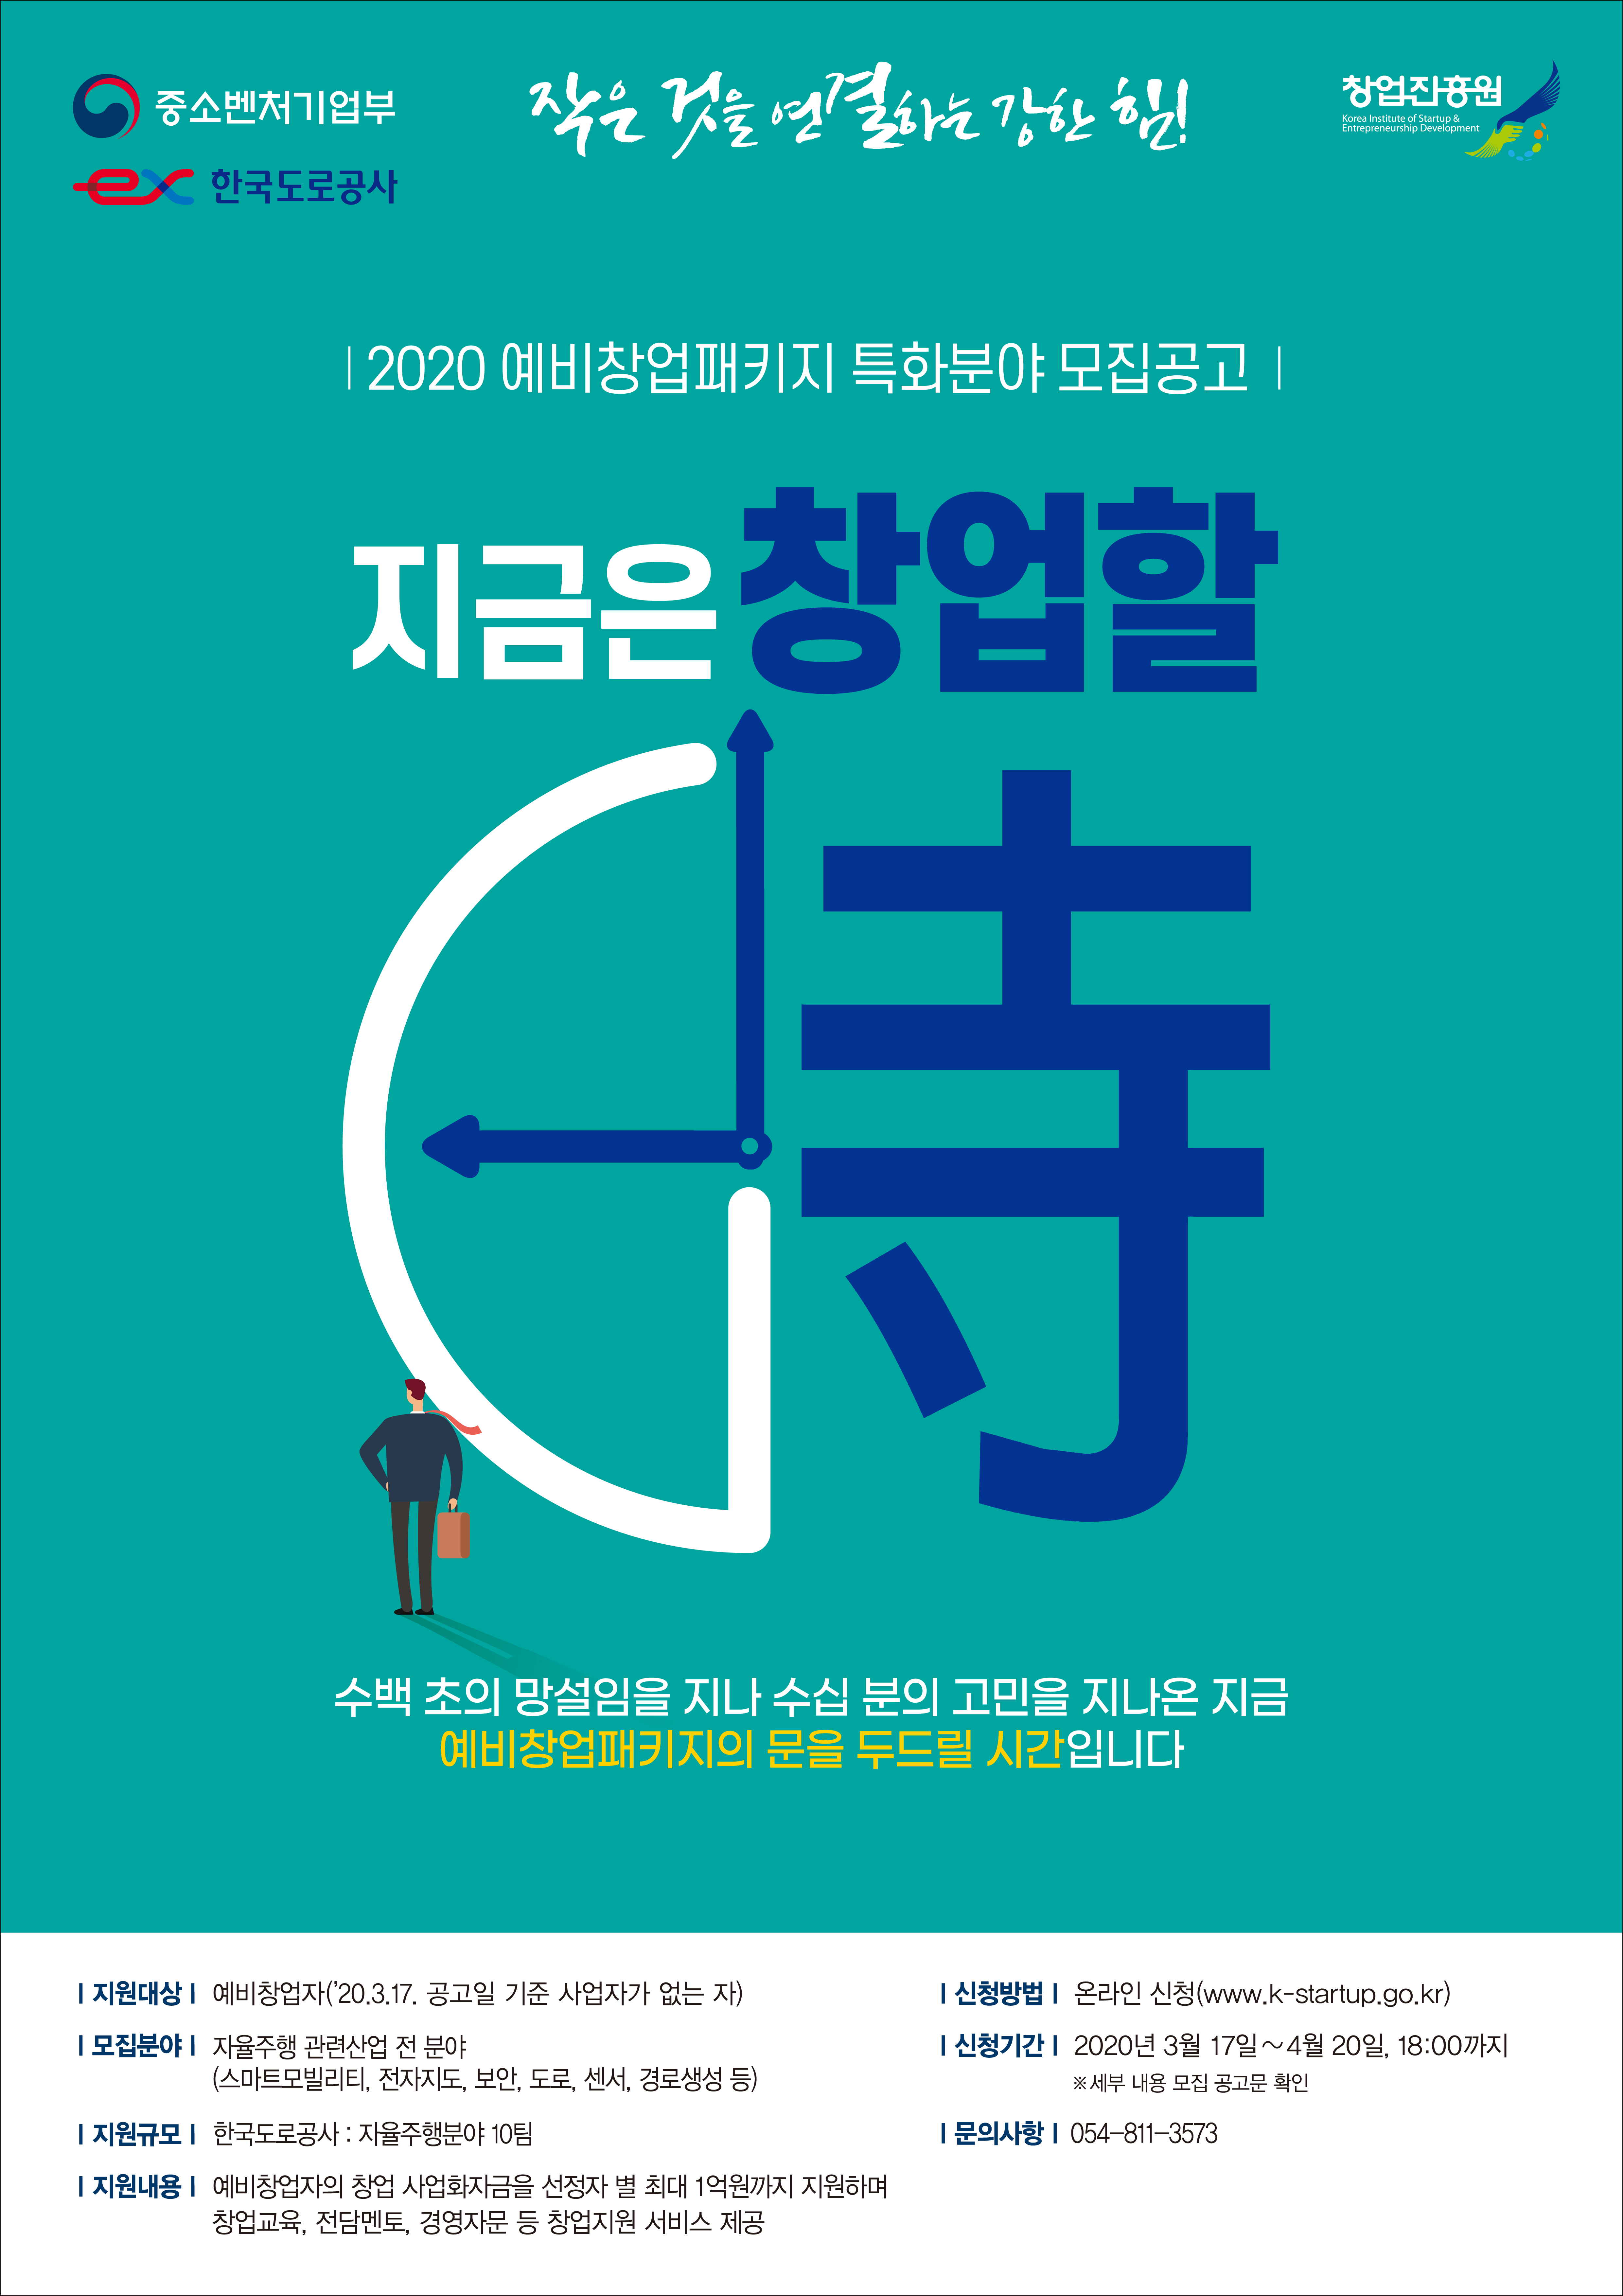 한국도로공사 예비창업패키지 모집공고 포스터